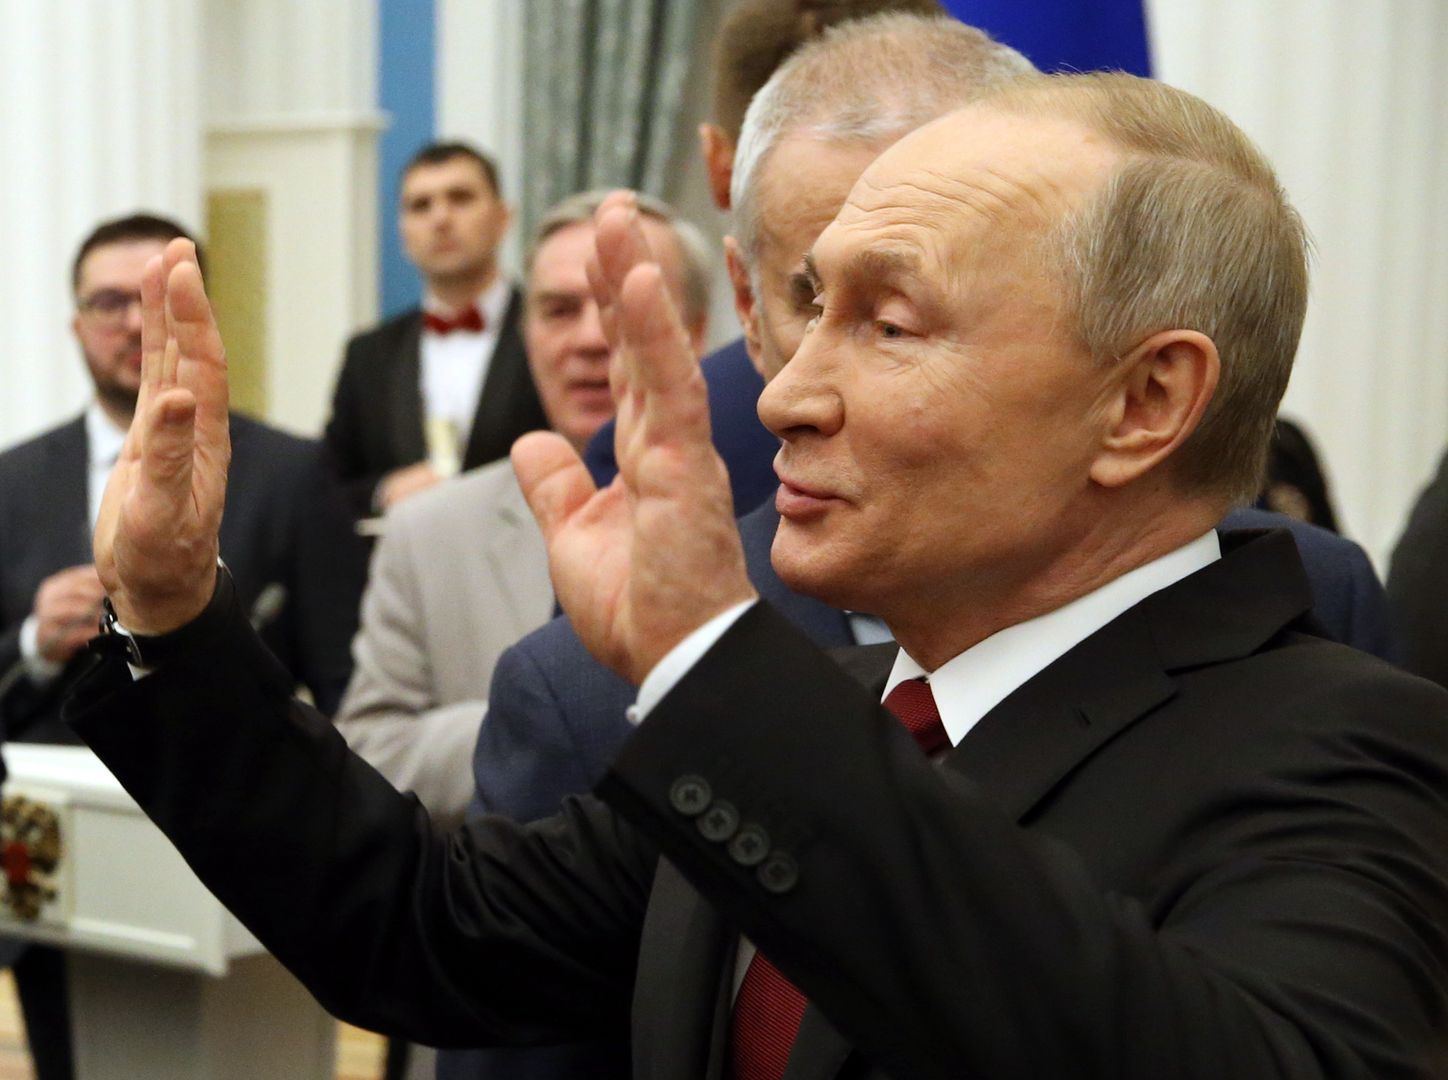 Putin ogranicza piwo. "Brzuch rośnie"